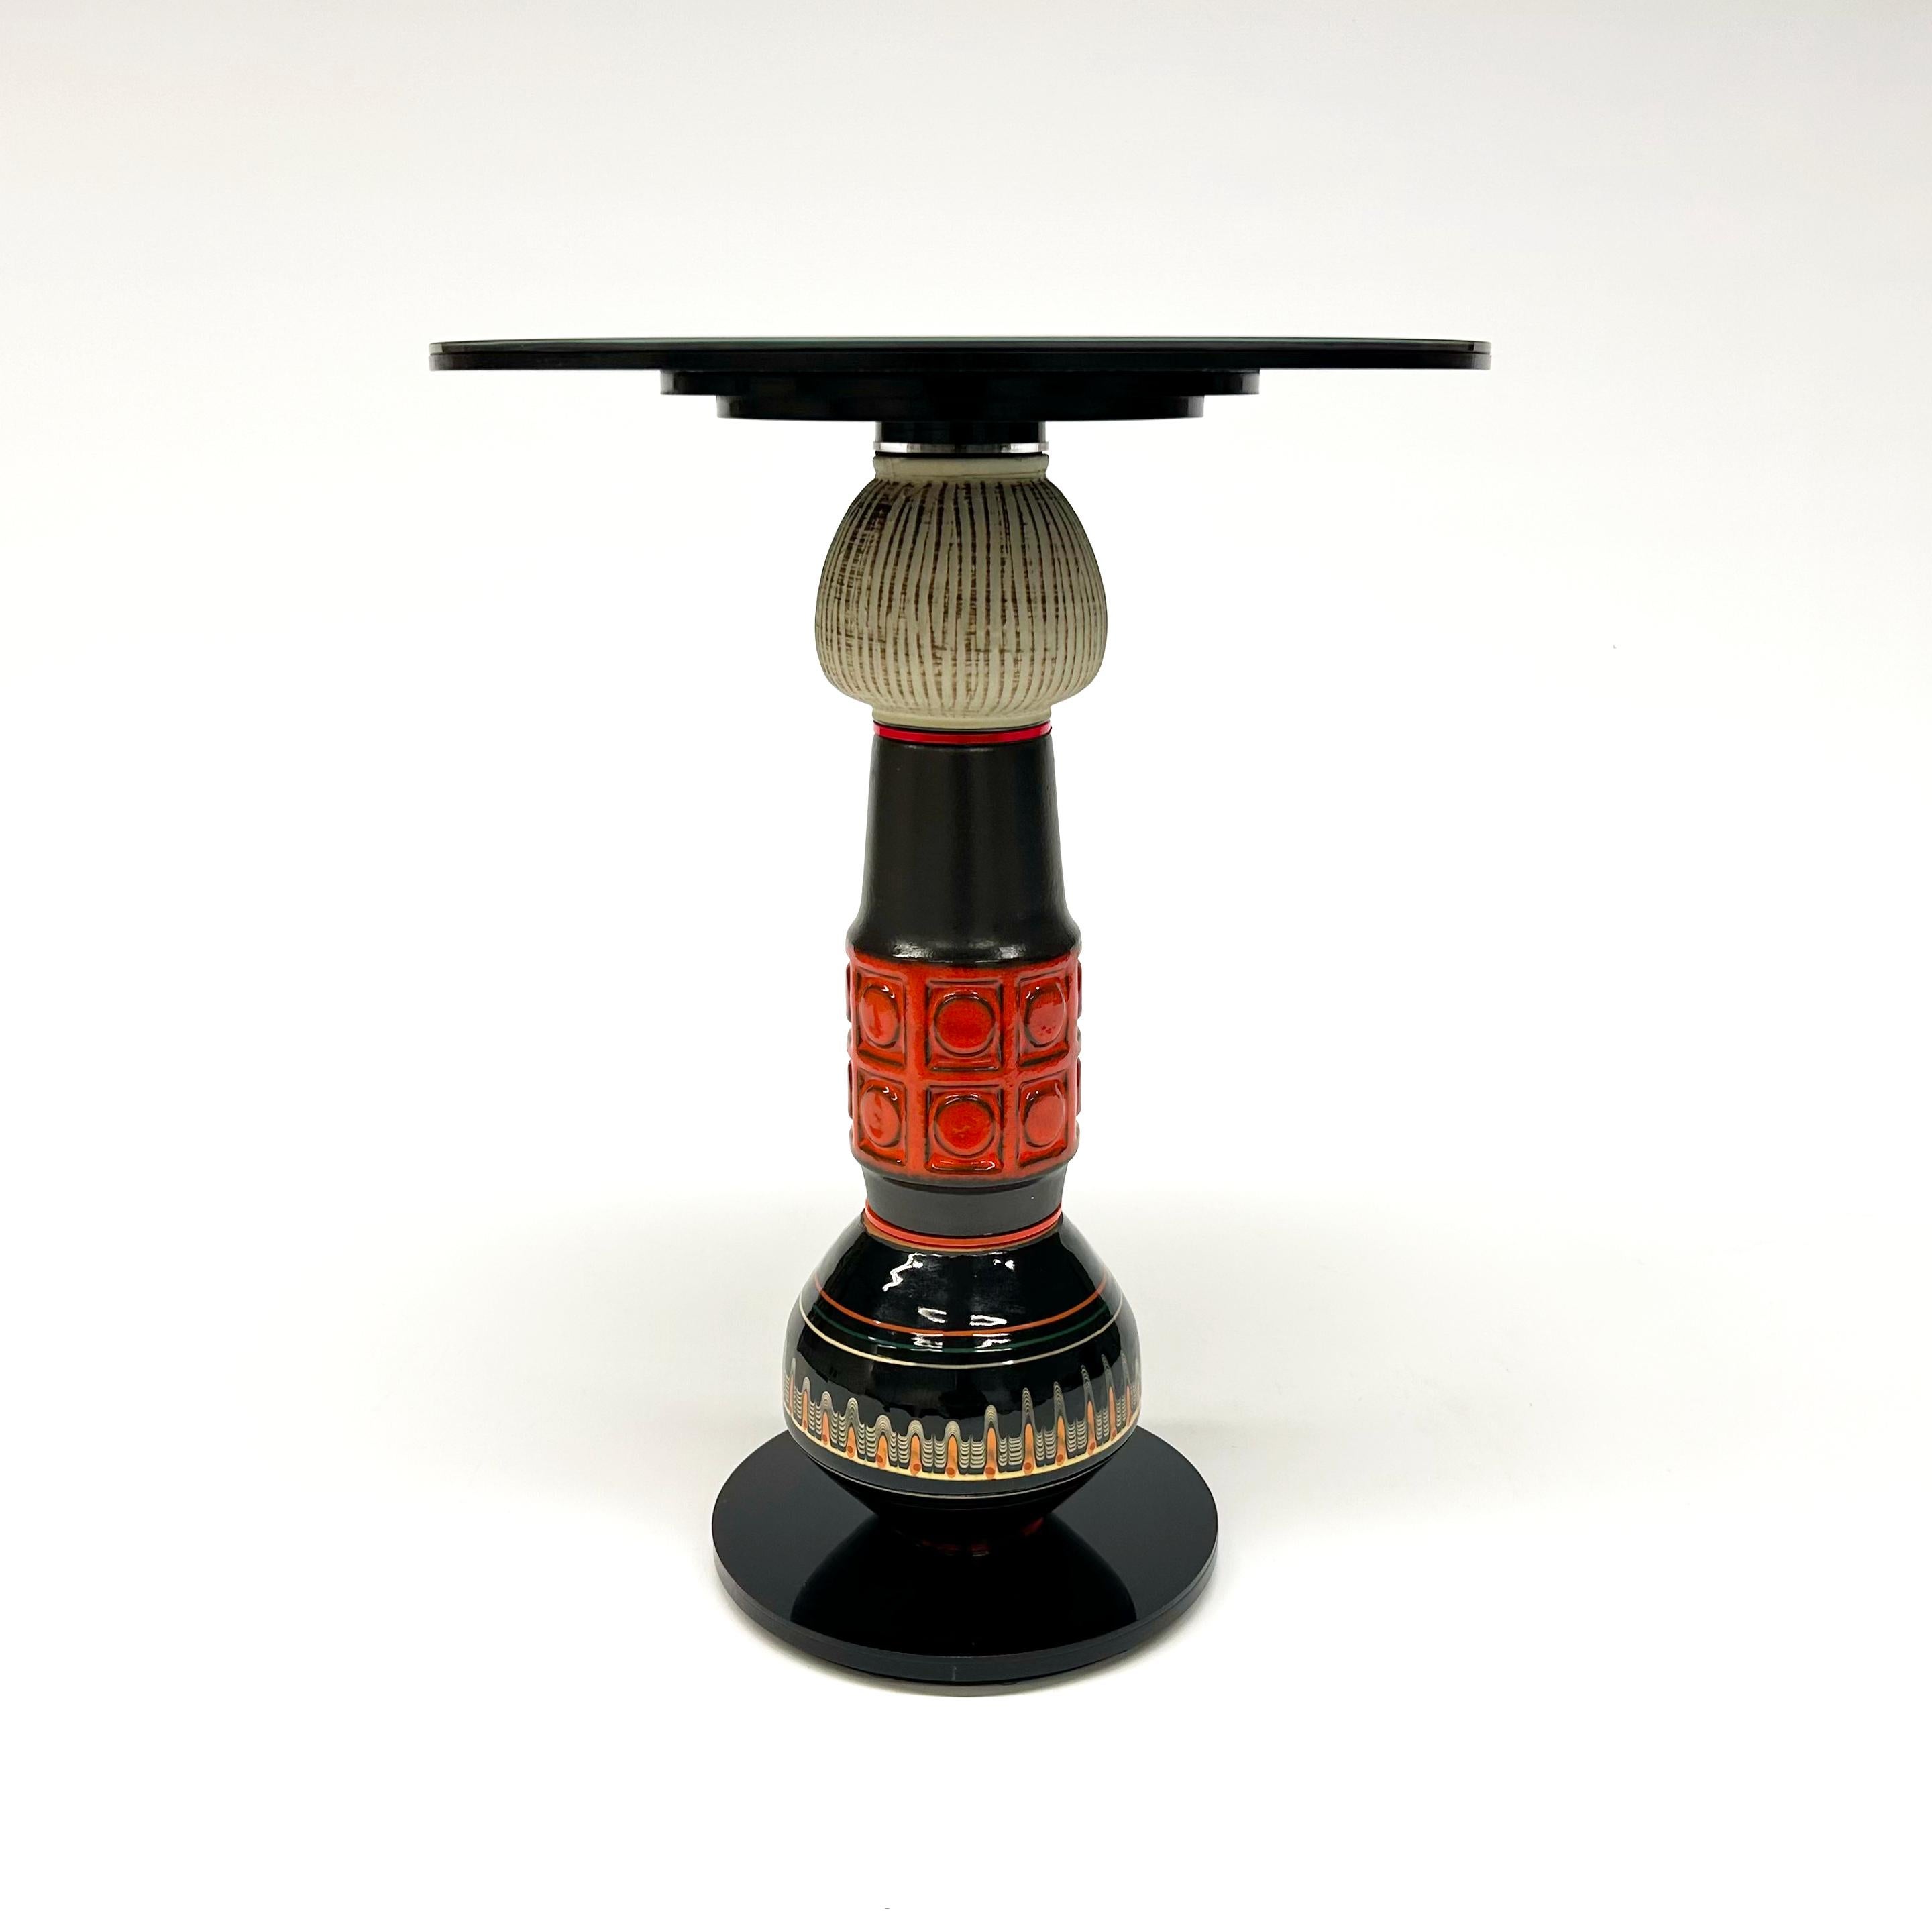 Der Designer und Artis Andreas Berlin hat eine Kollektion von außergewöhnlichen Beistelltischen entworfen. Diese Tische sind Skulpturen und nützliche Upcycling-Tische der Spitzenklasse. Die in Antiquitätenläden gefundenen Vasen erhalten als Teil